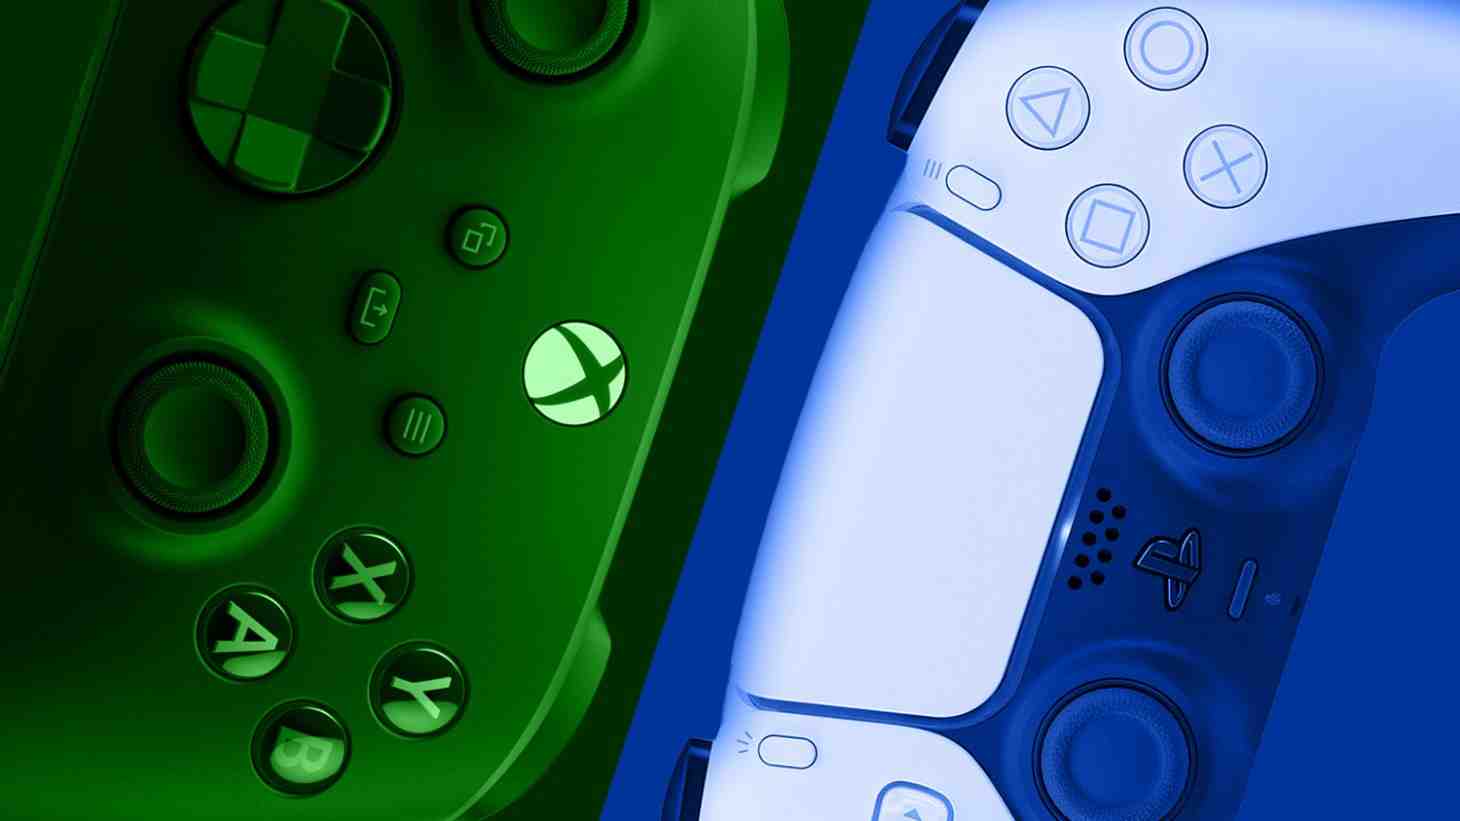 Y a-t-il une nouvelle Xbox qui sort en 2022 ?